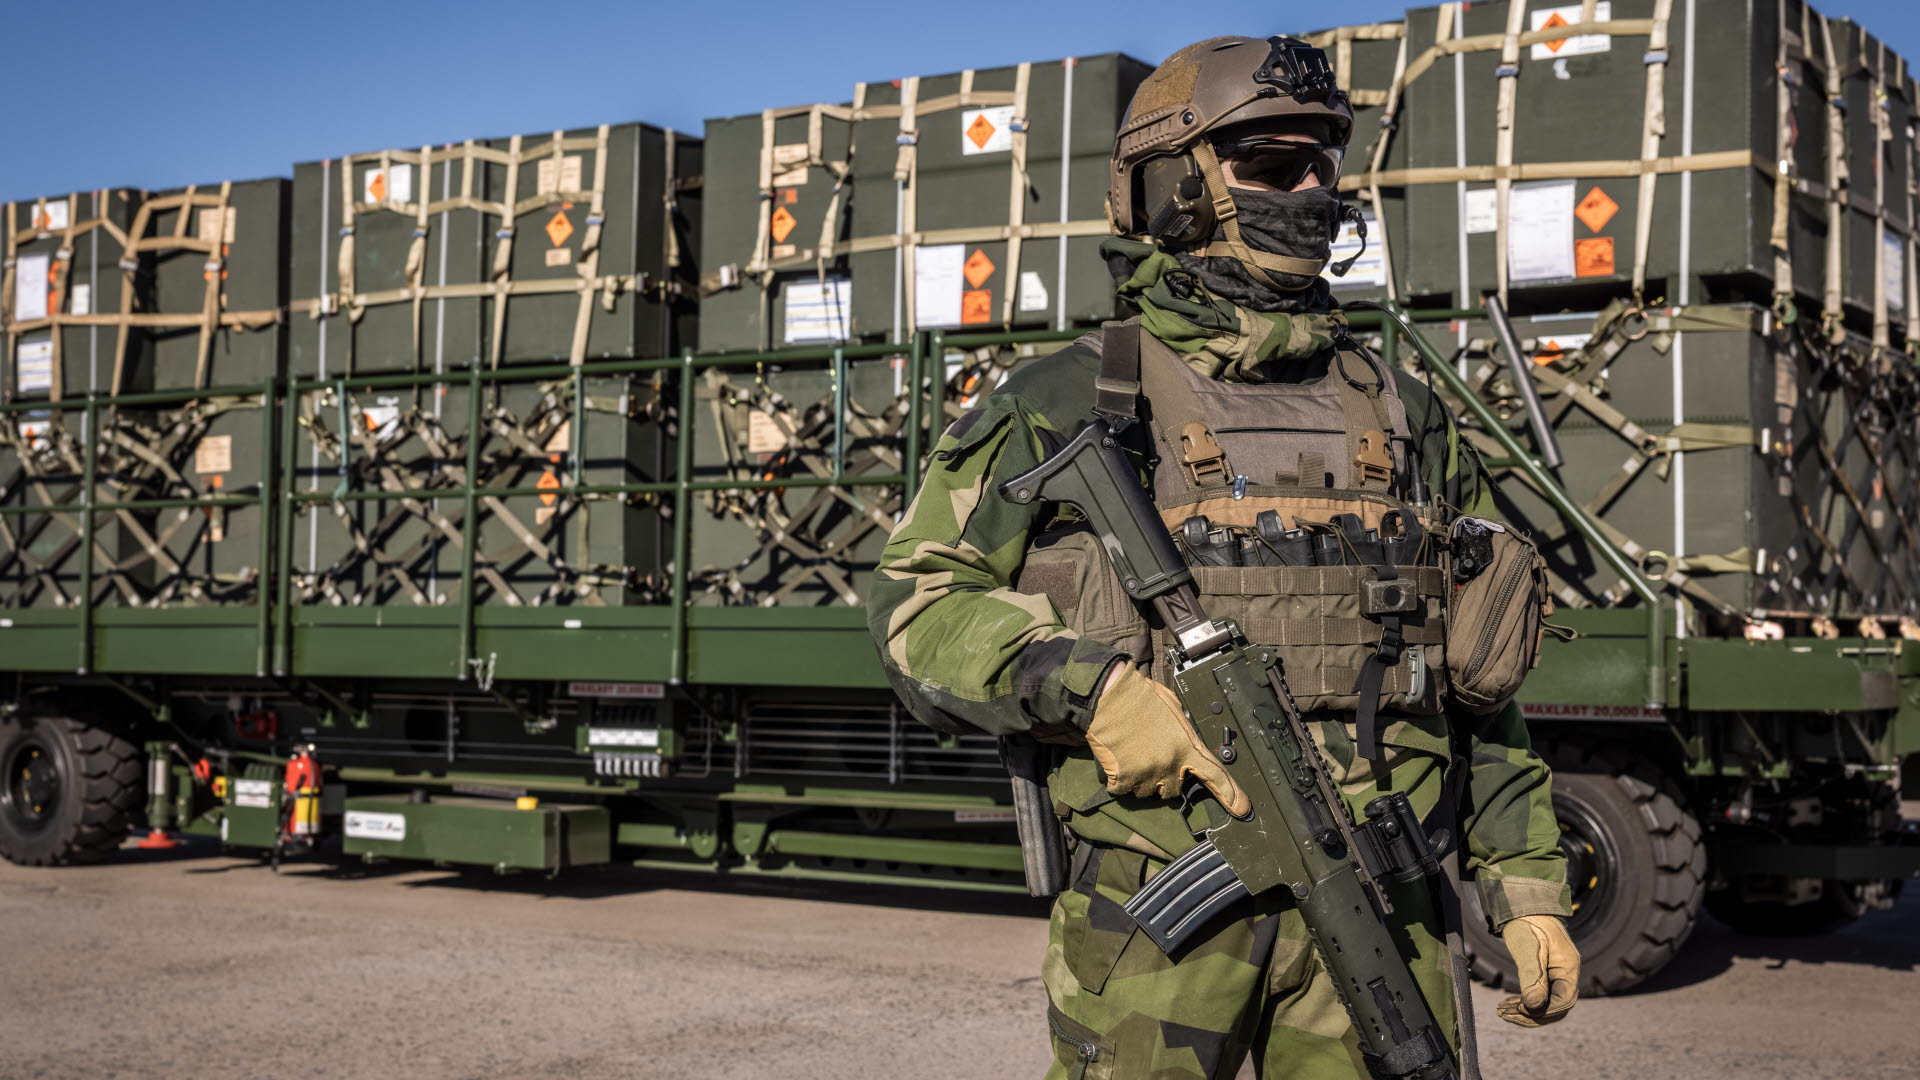 Systemy obrony powietrznej, samochody terenowe i sprzęt zimowy: Szwecja ogłasza nowy pakiet pomocy wojskowej dla Ukrainy o wartości 287 000 000 dolarów